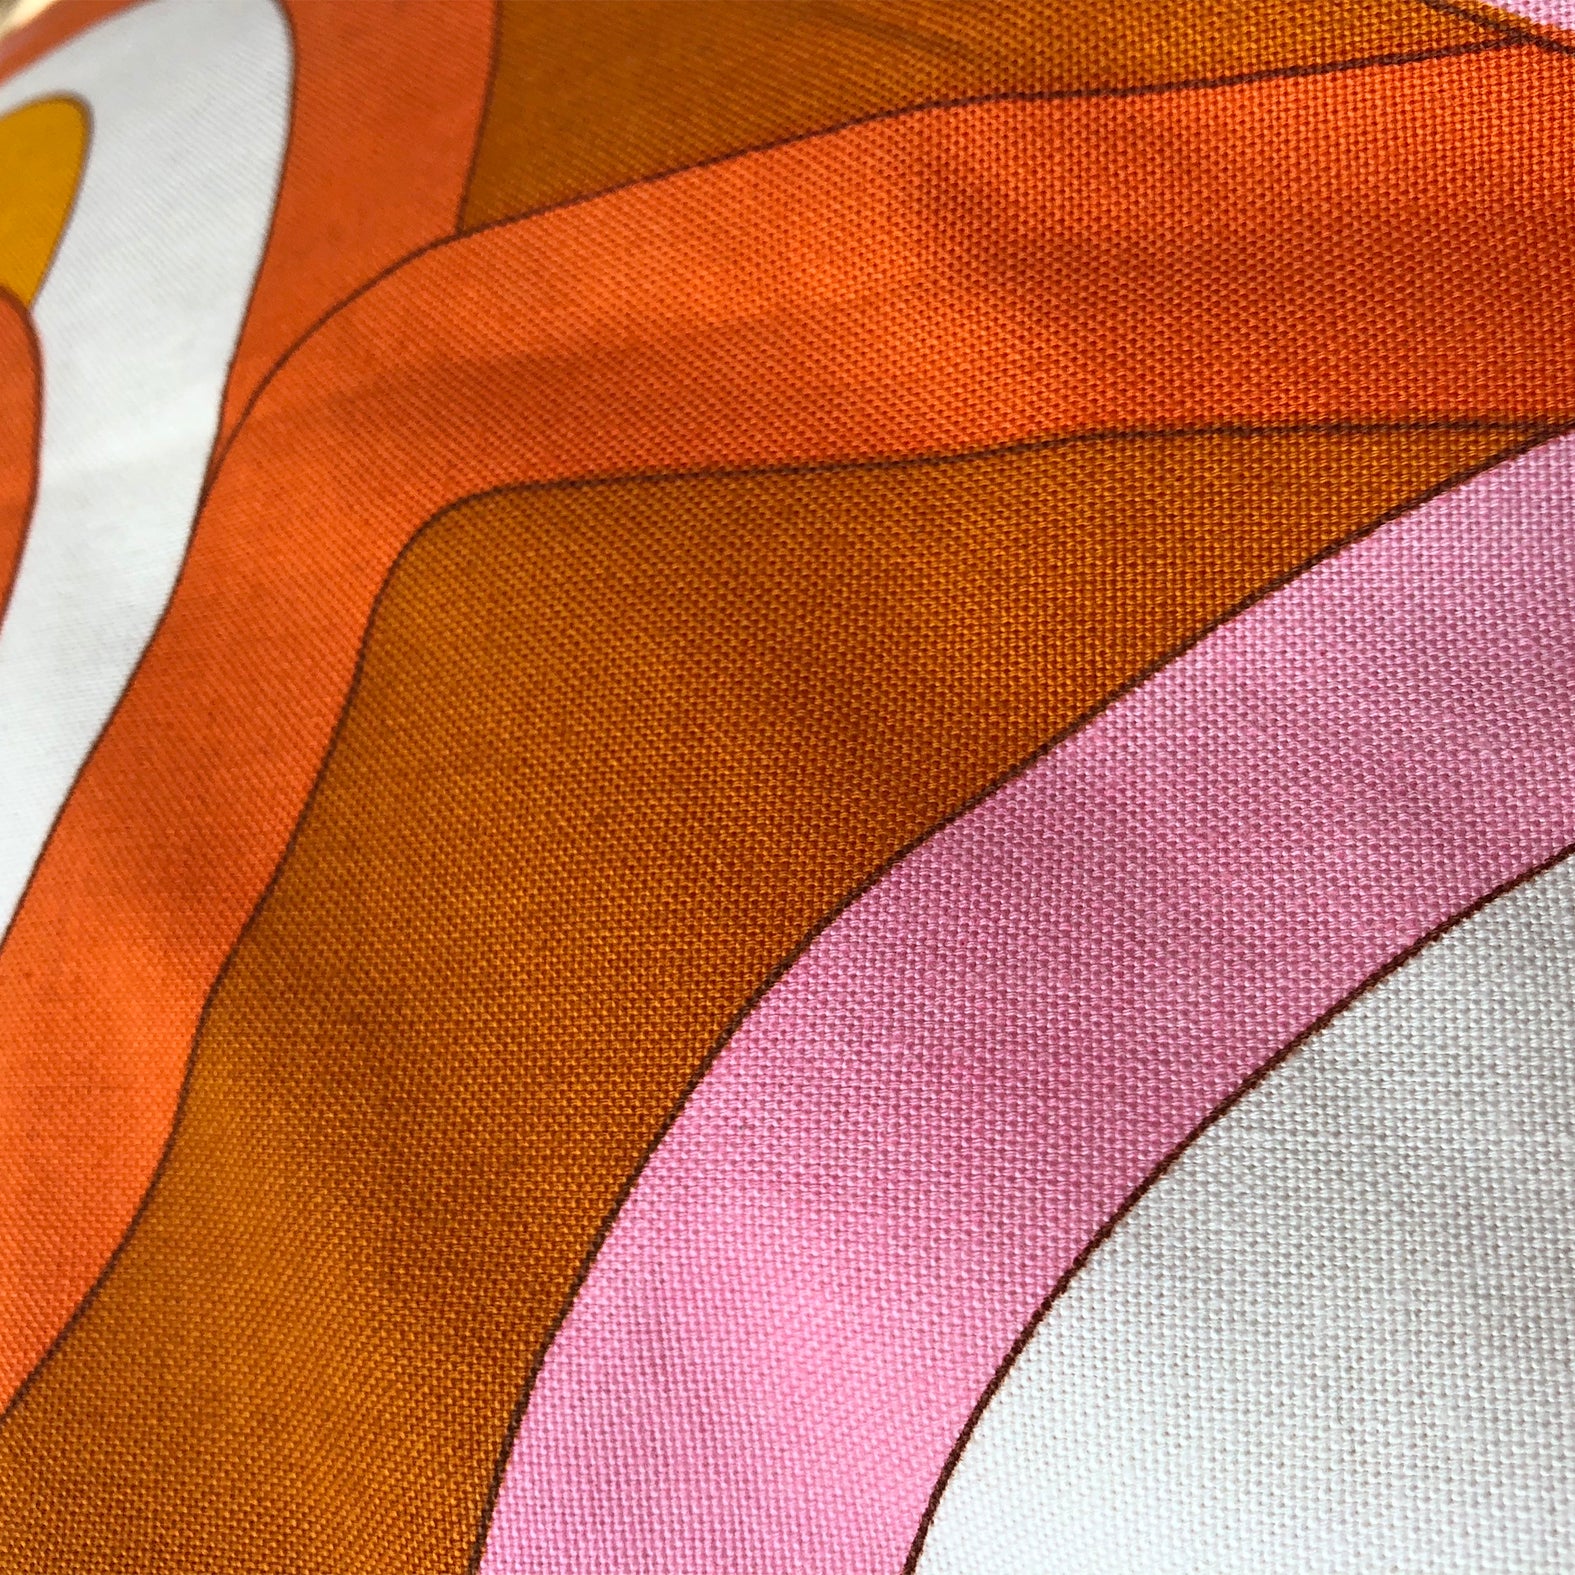 Hundebett rund aus Vintagestoff 70er Retro Muster in Orange, Braun und Pink für große Hunde